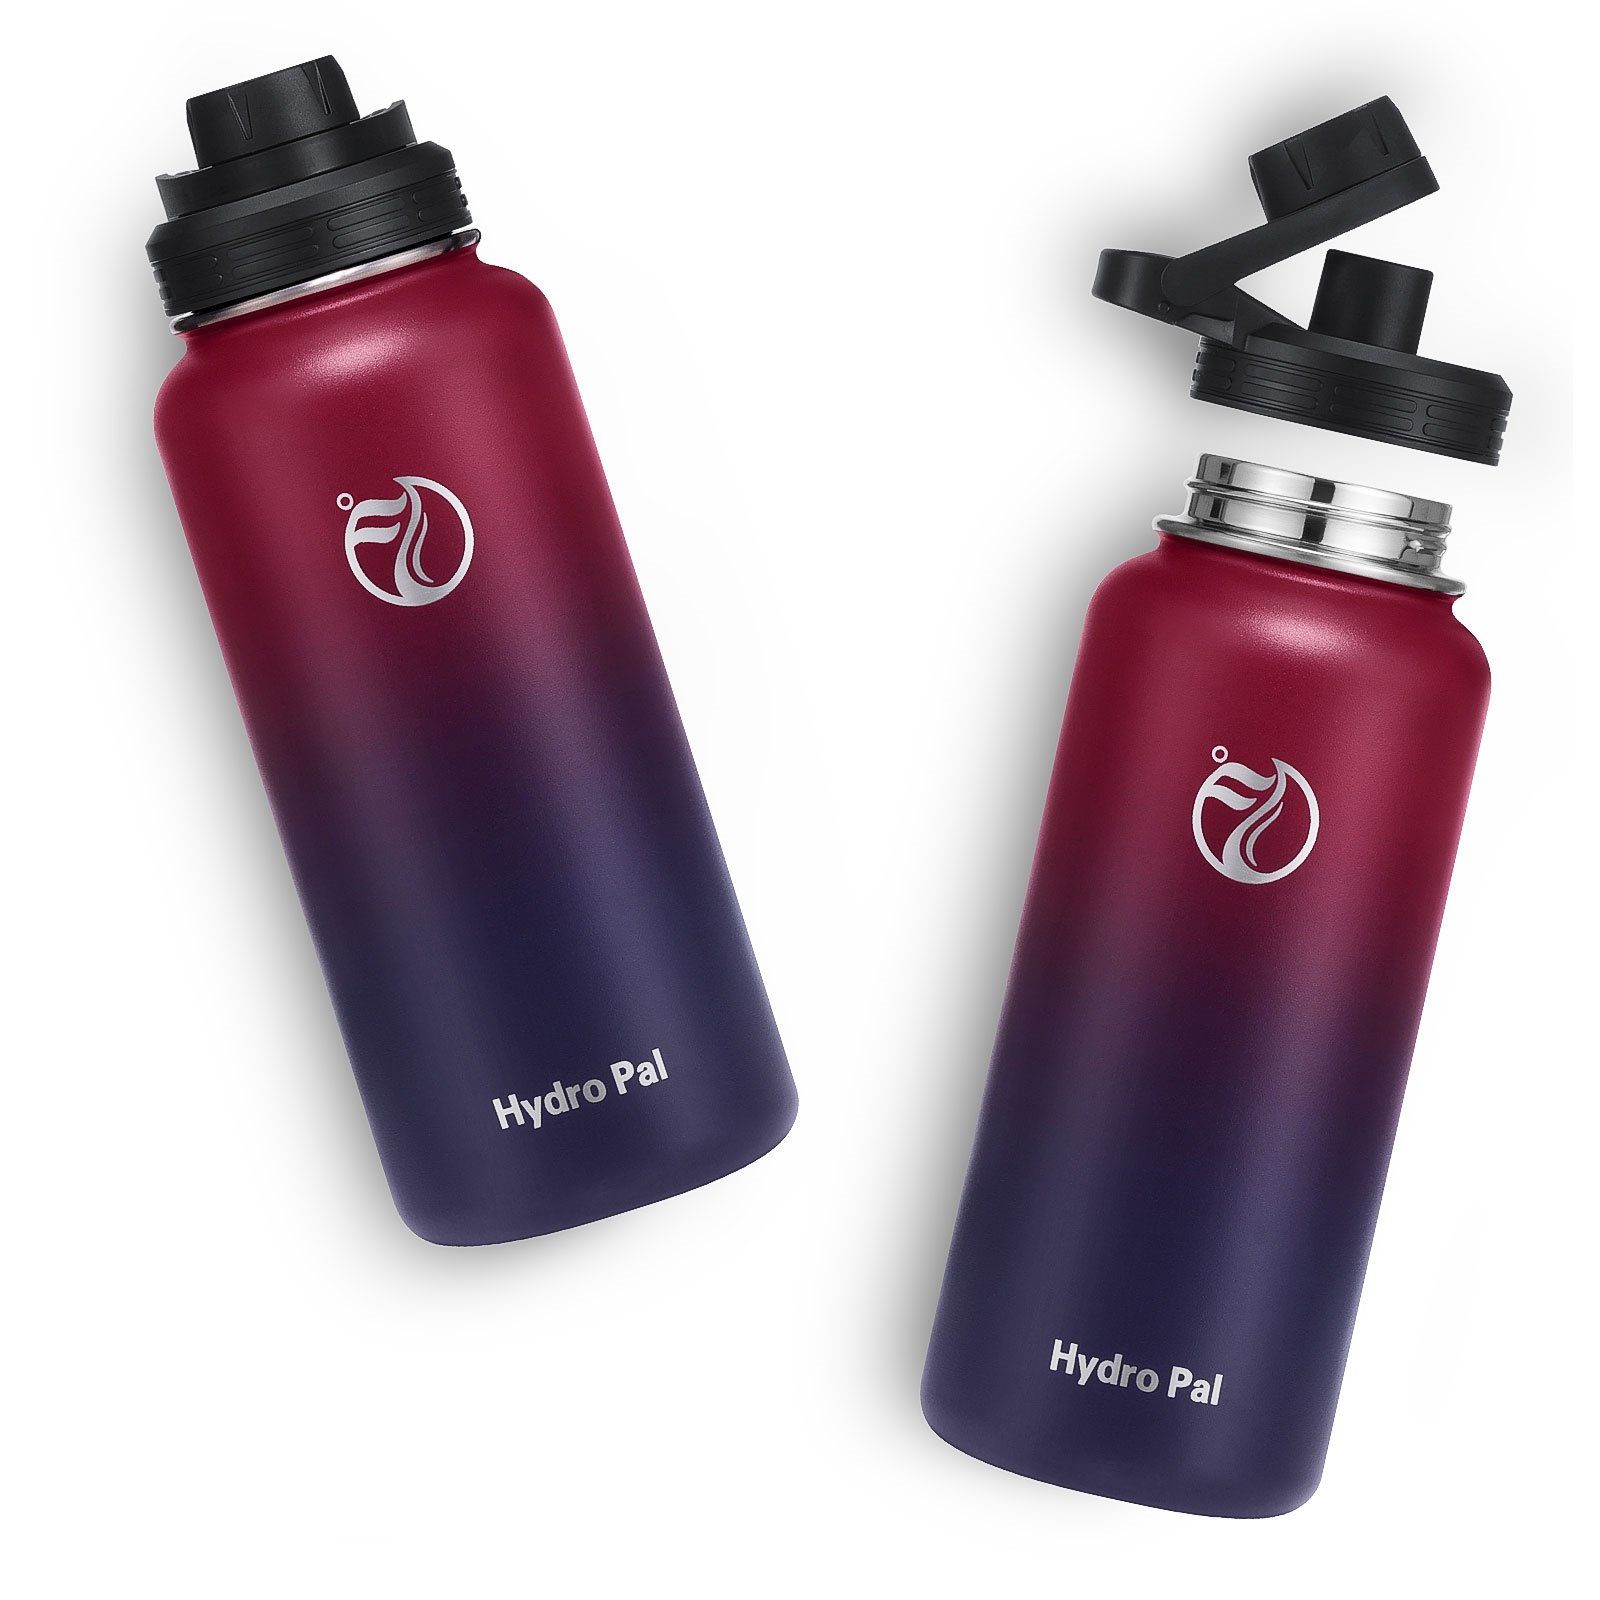 Thermosflasche Isolierte Auslaufsicher Strohhalm Edelstahl, 2 Wasserflasche Rot/Lila Kohlensäure Deckel 1L BPA-Frei OKWISH Isolierflasche geeignet Liter 1 2 Trinkflasche